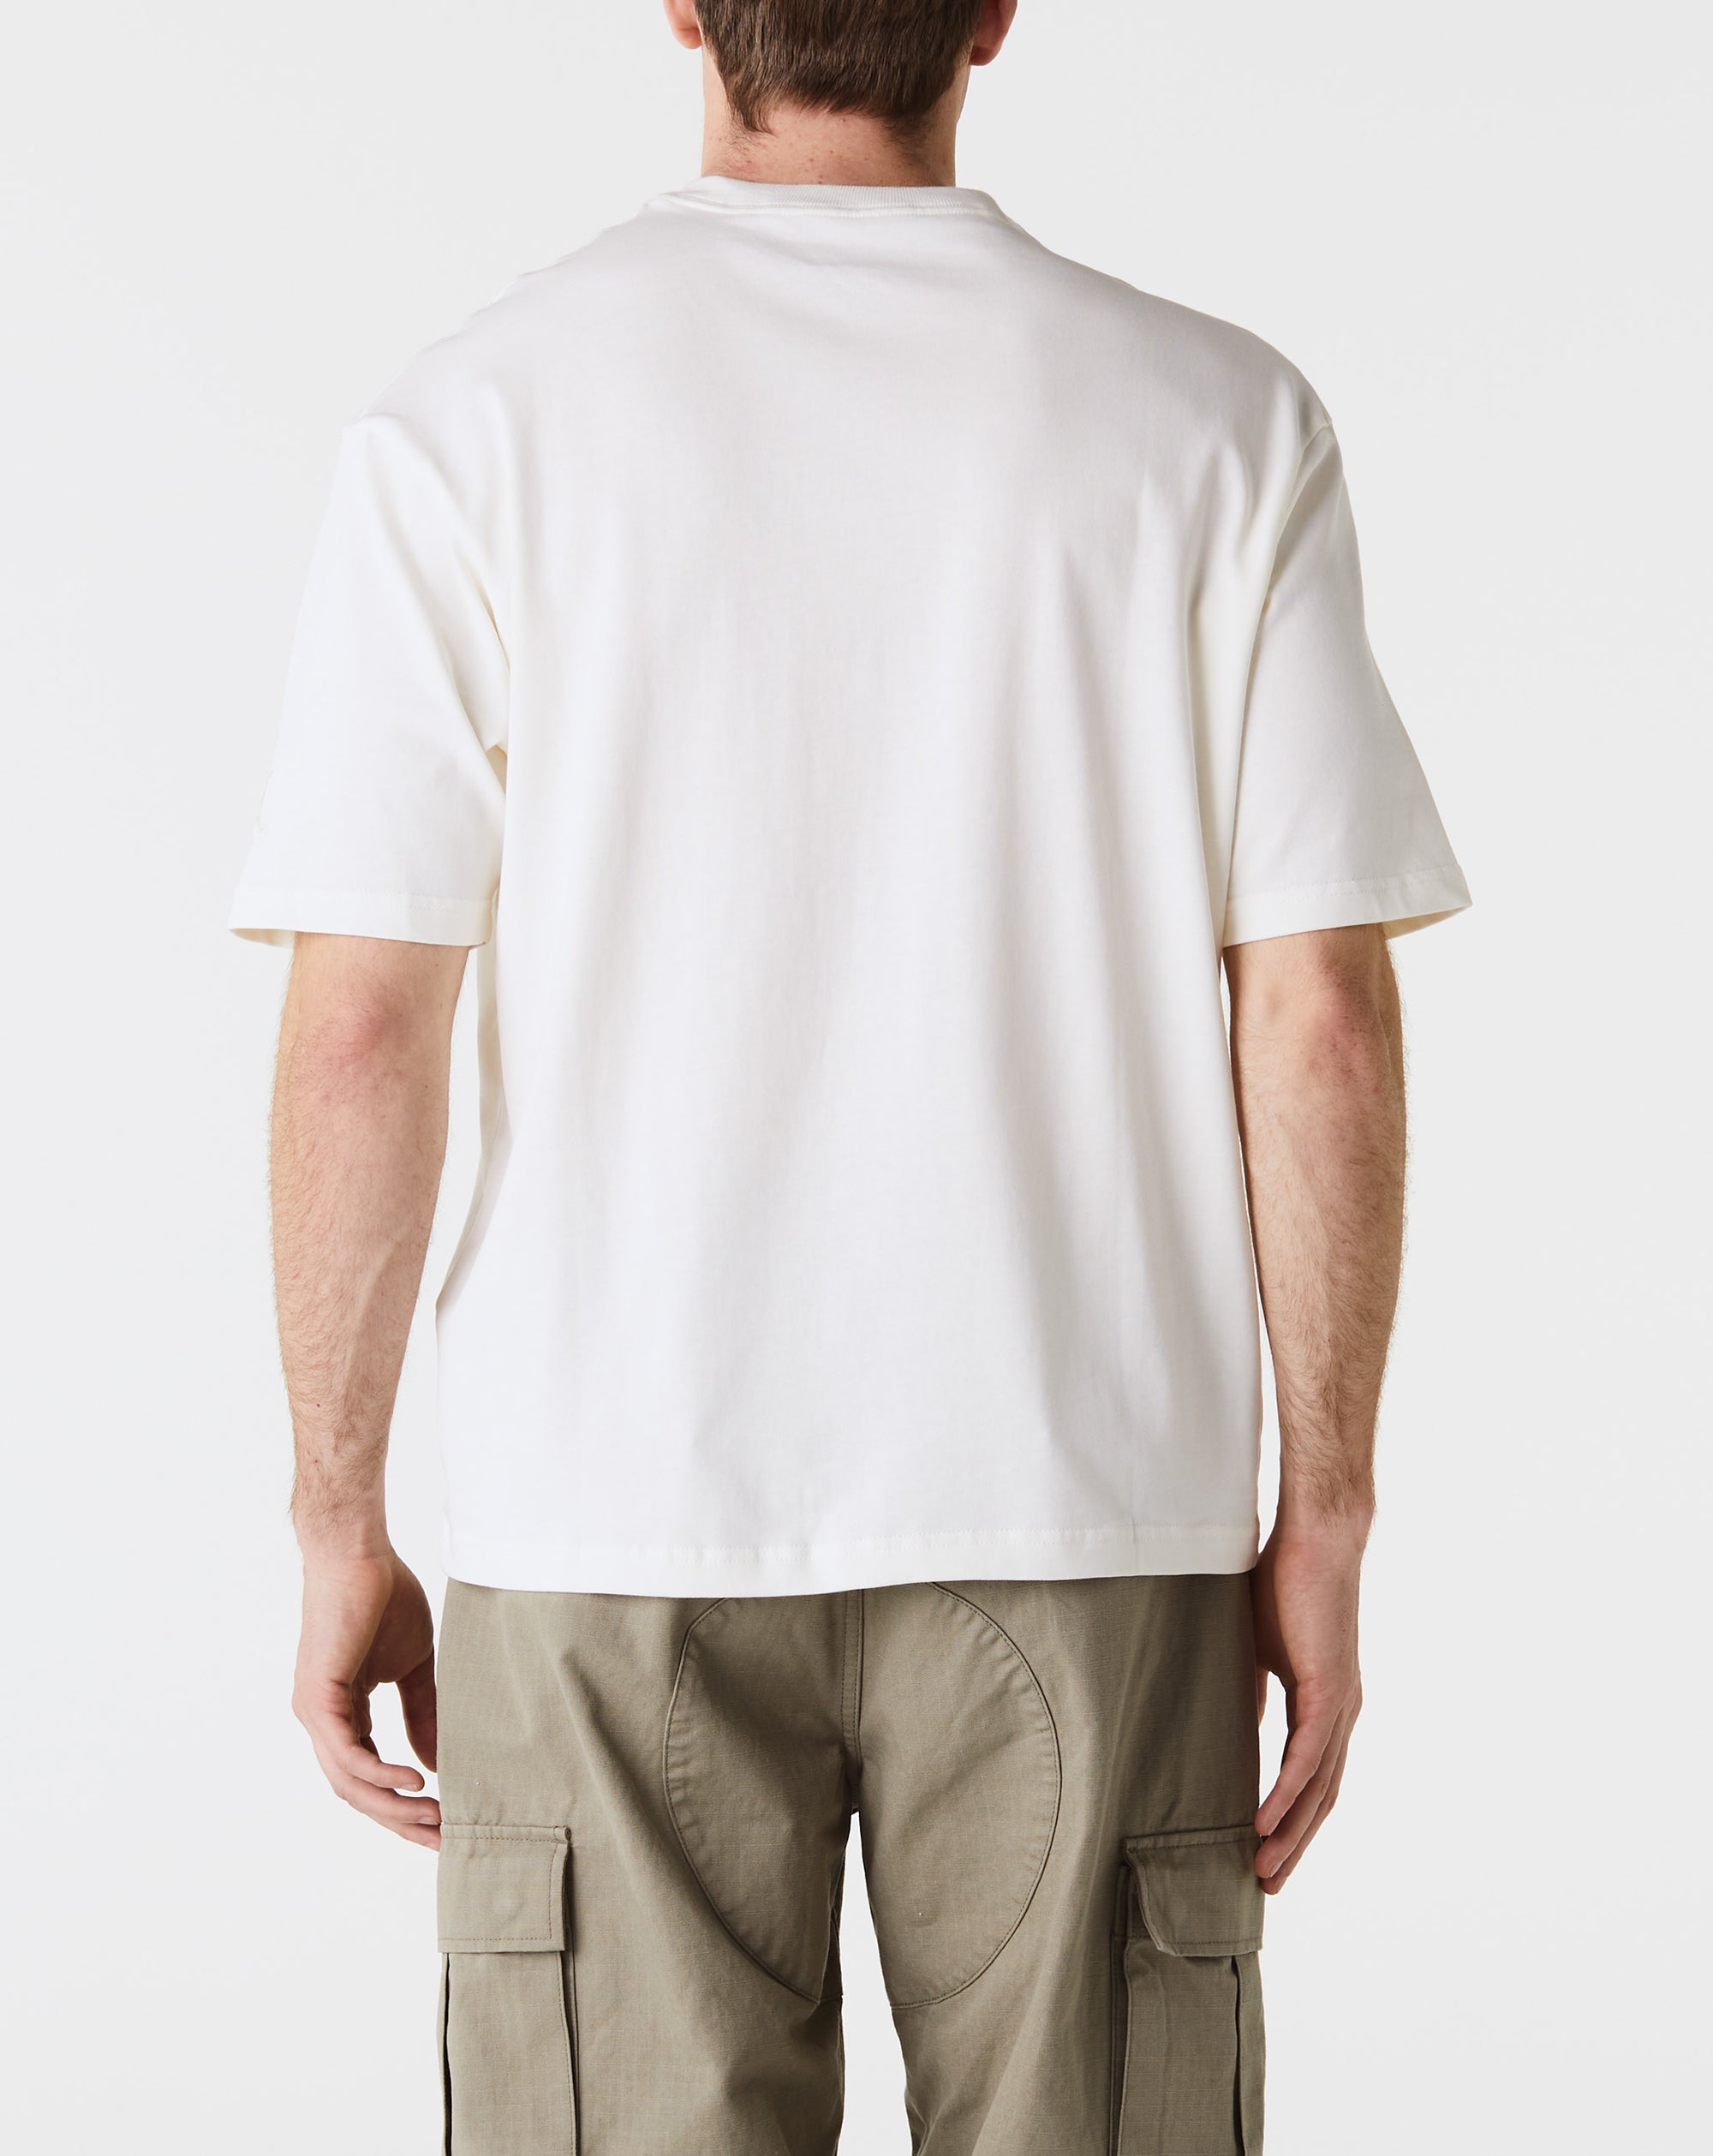 Air Jordan Woodmark T-Shirt - Rule of Next Apparel